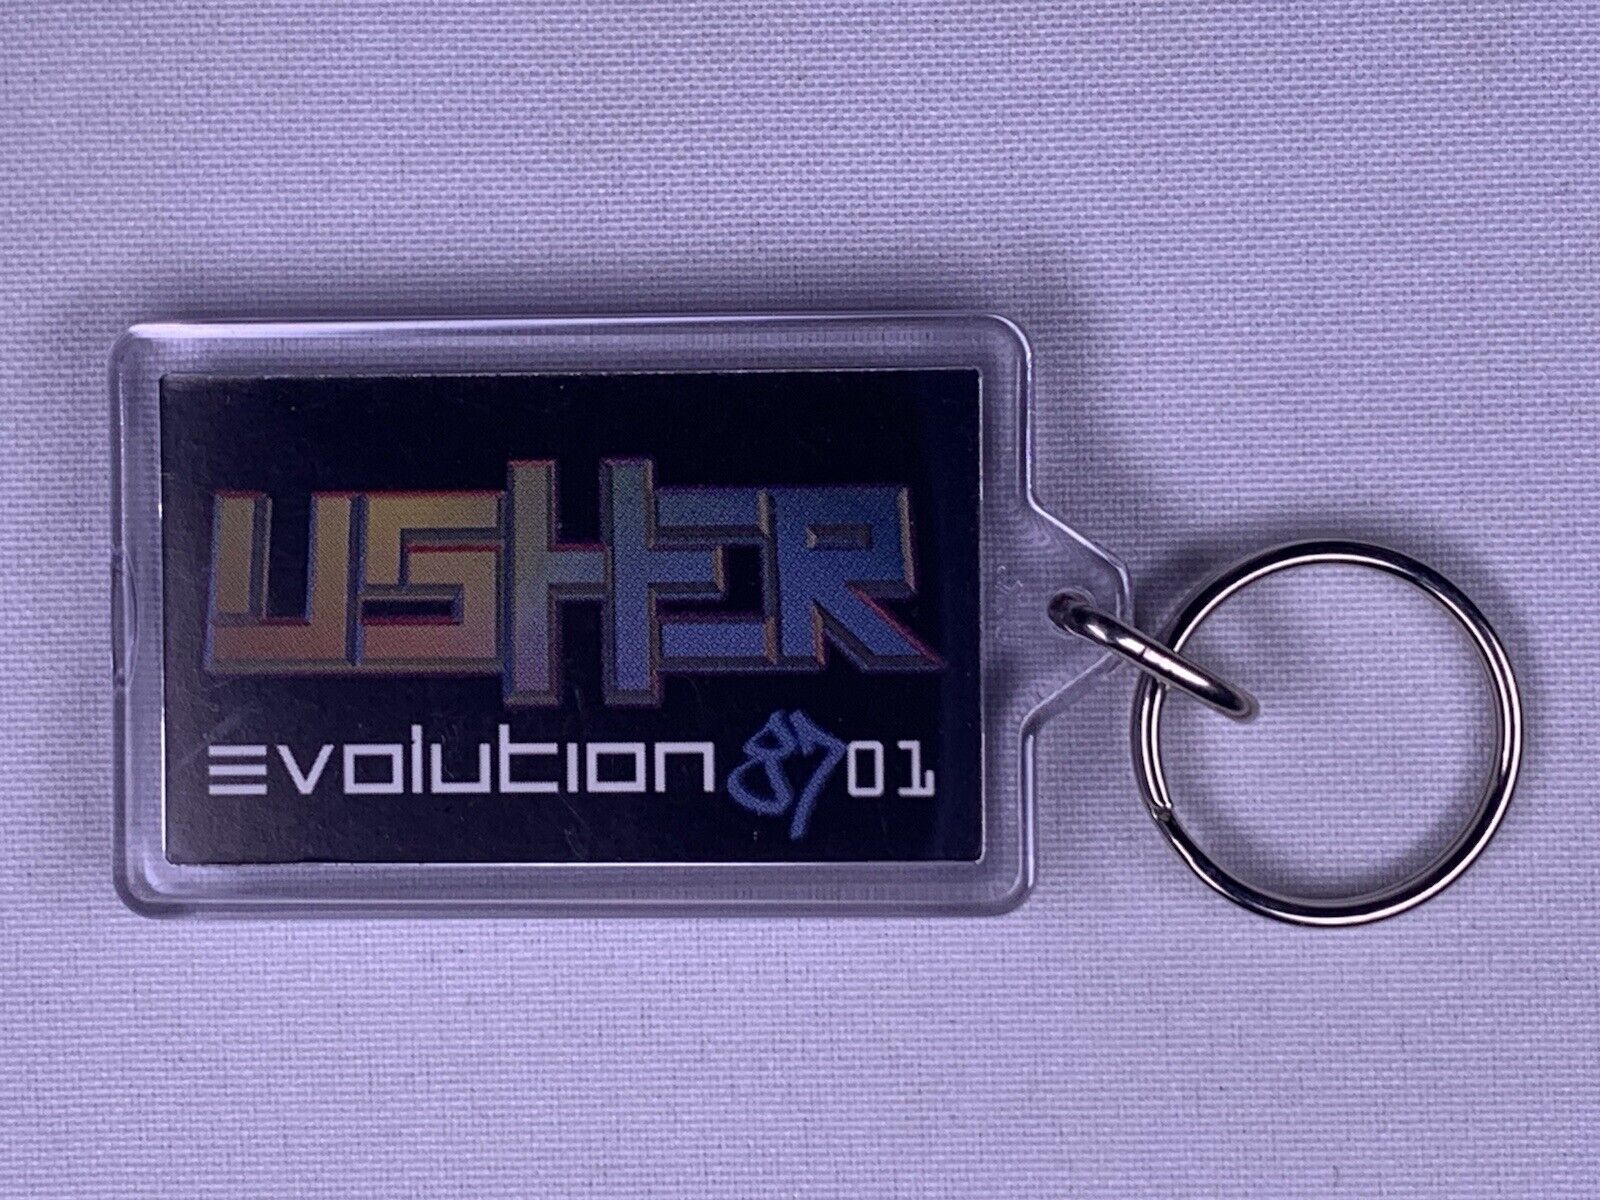 Usher Keyring Official Merchandise Evolution 8701 UK Tour 2002